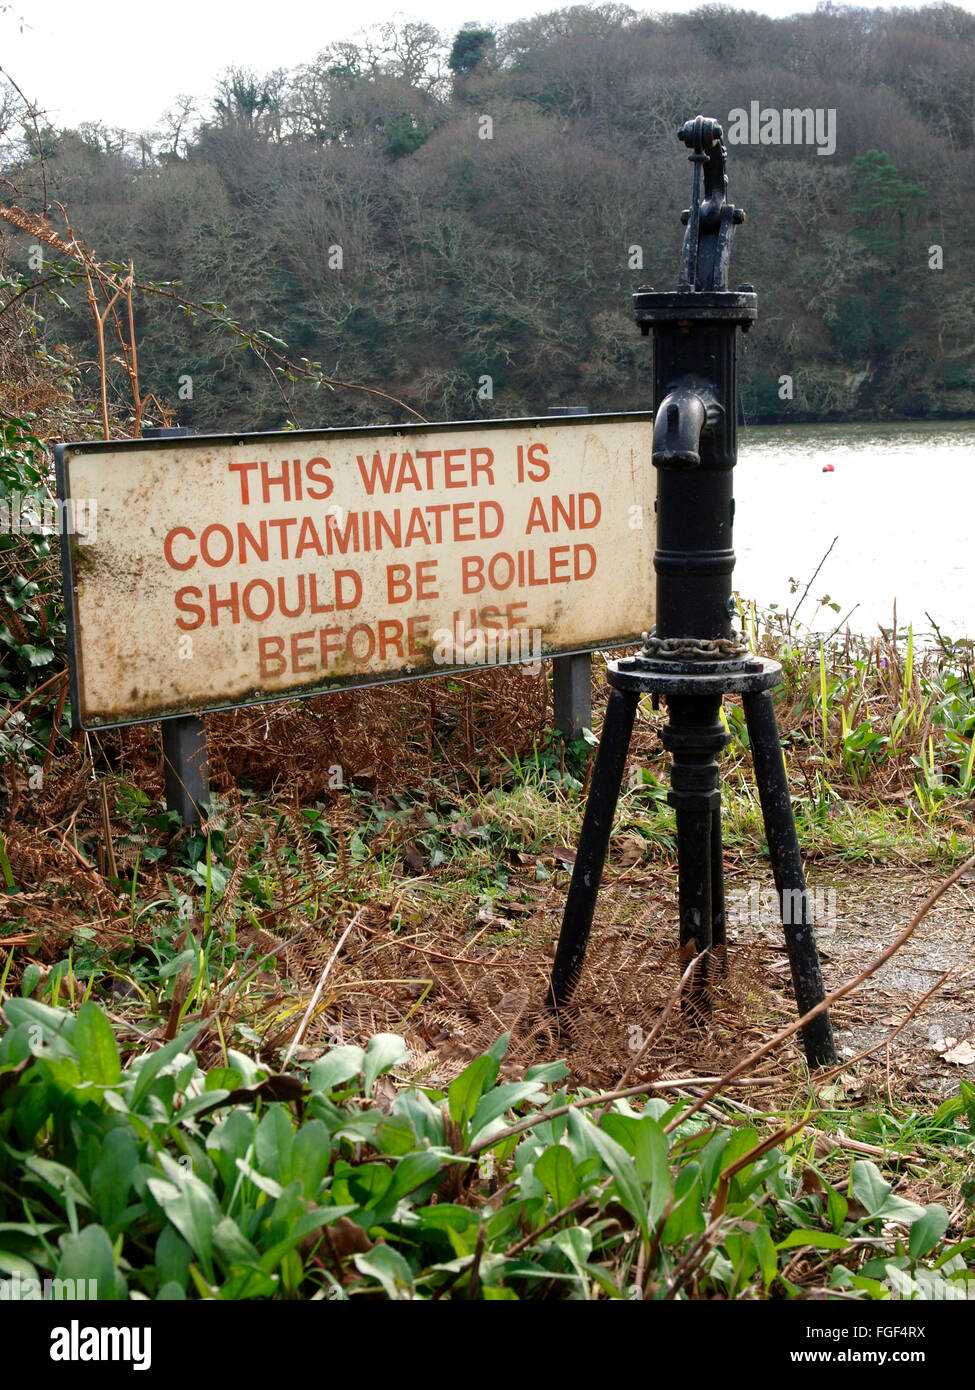 L'eau contaminée en regard de l'eau publique, pompe à main Penpol, Falmouth, Cornwall, UK Banque D'Images